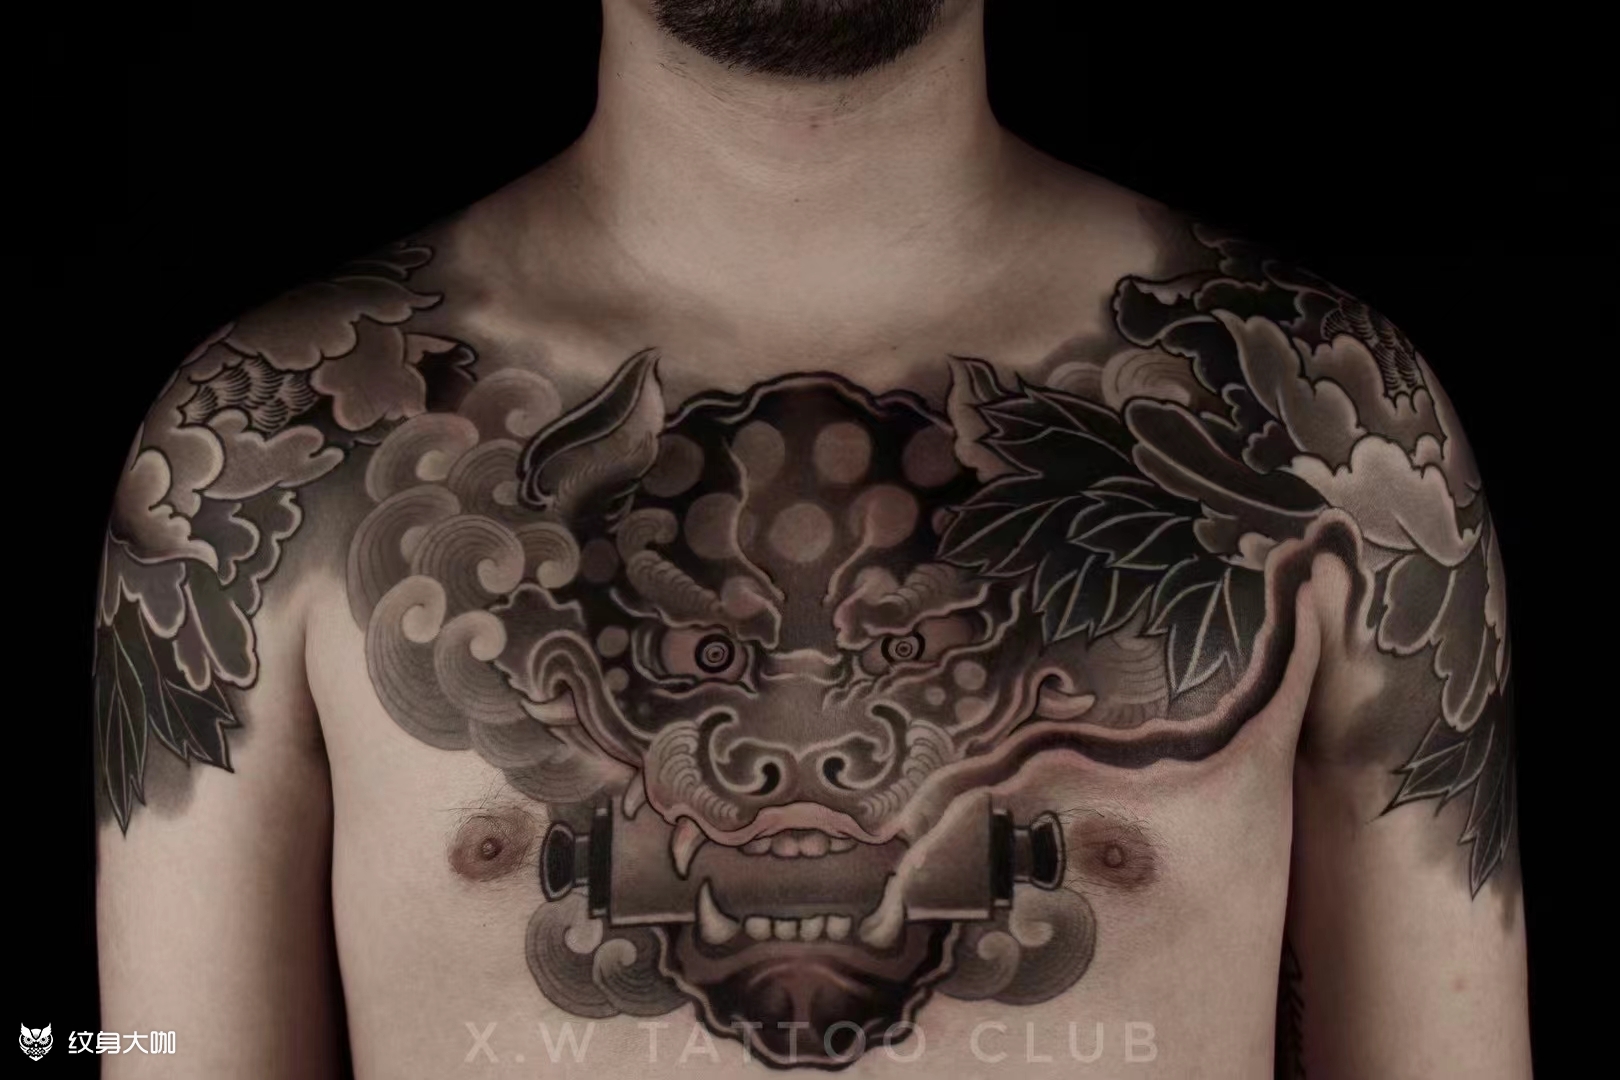 分享33张性感女性胸下各种纹身风格的纹身作品图片 - 胸部纹身图案大全 武汉老兵纹身